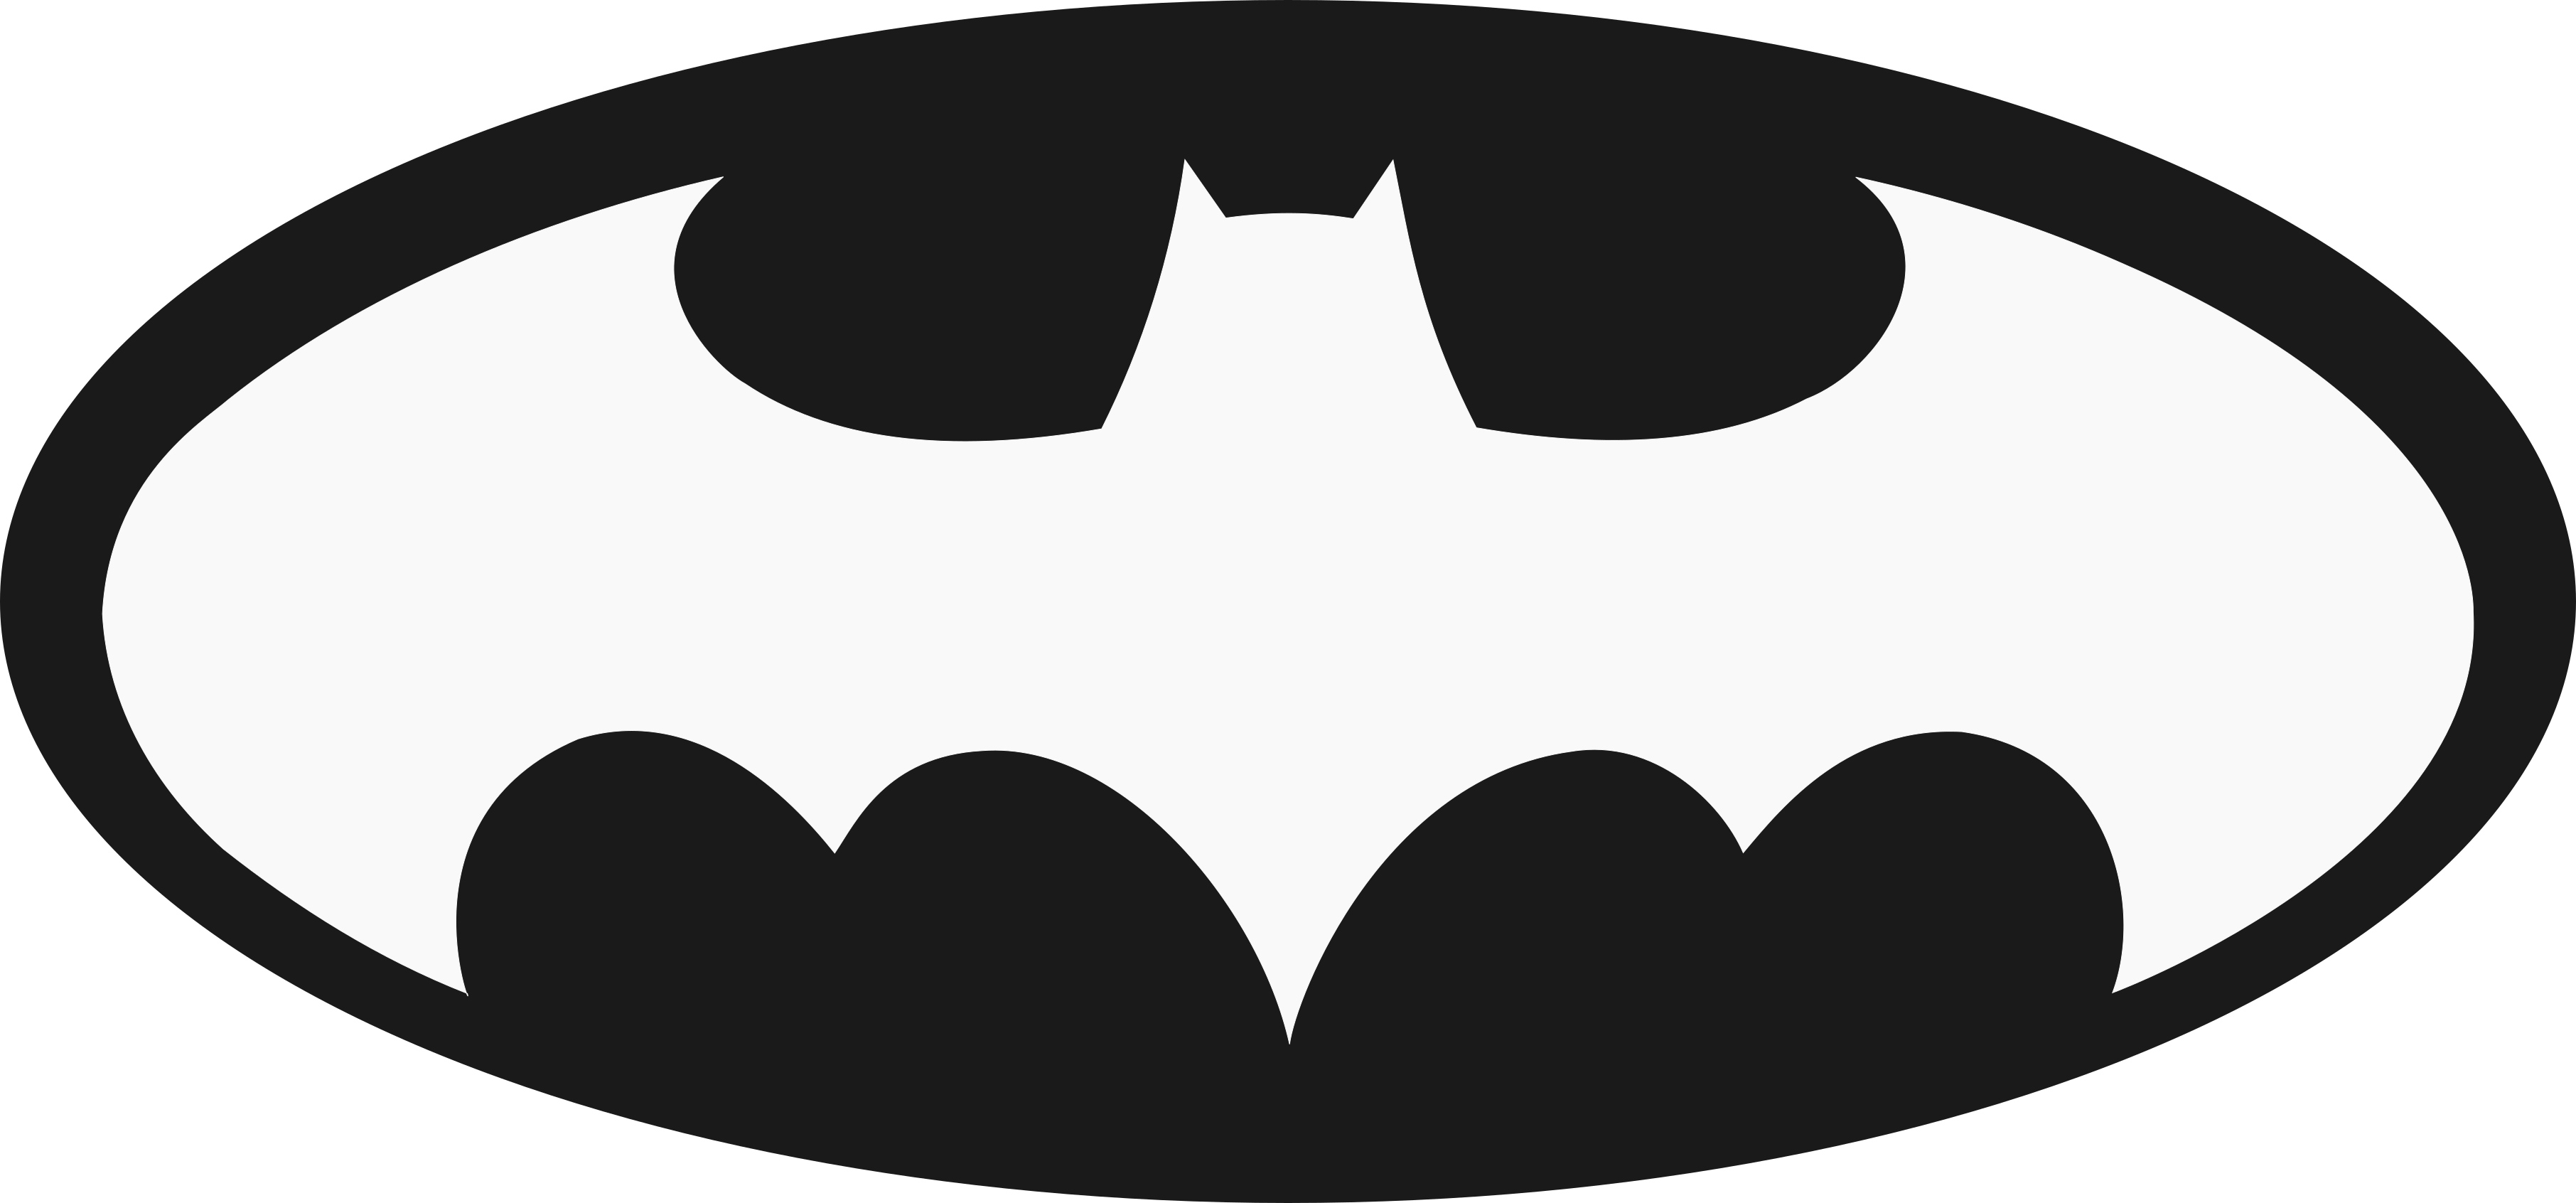 Batman Logo Drawing YouTube - bat png download - 3624*1692 - Free Transparent  Batman png Download. - Clip Art Library